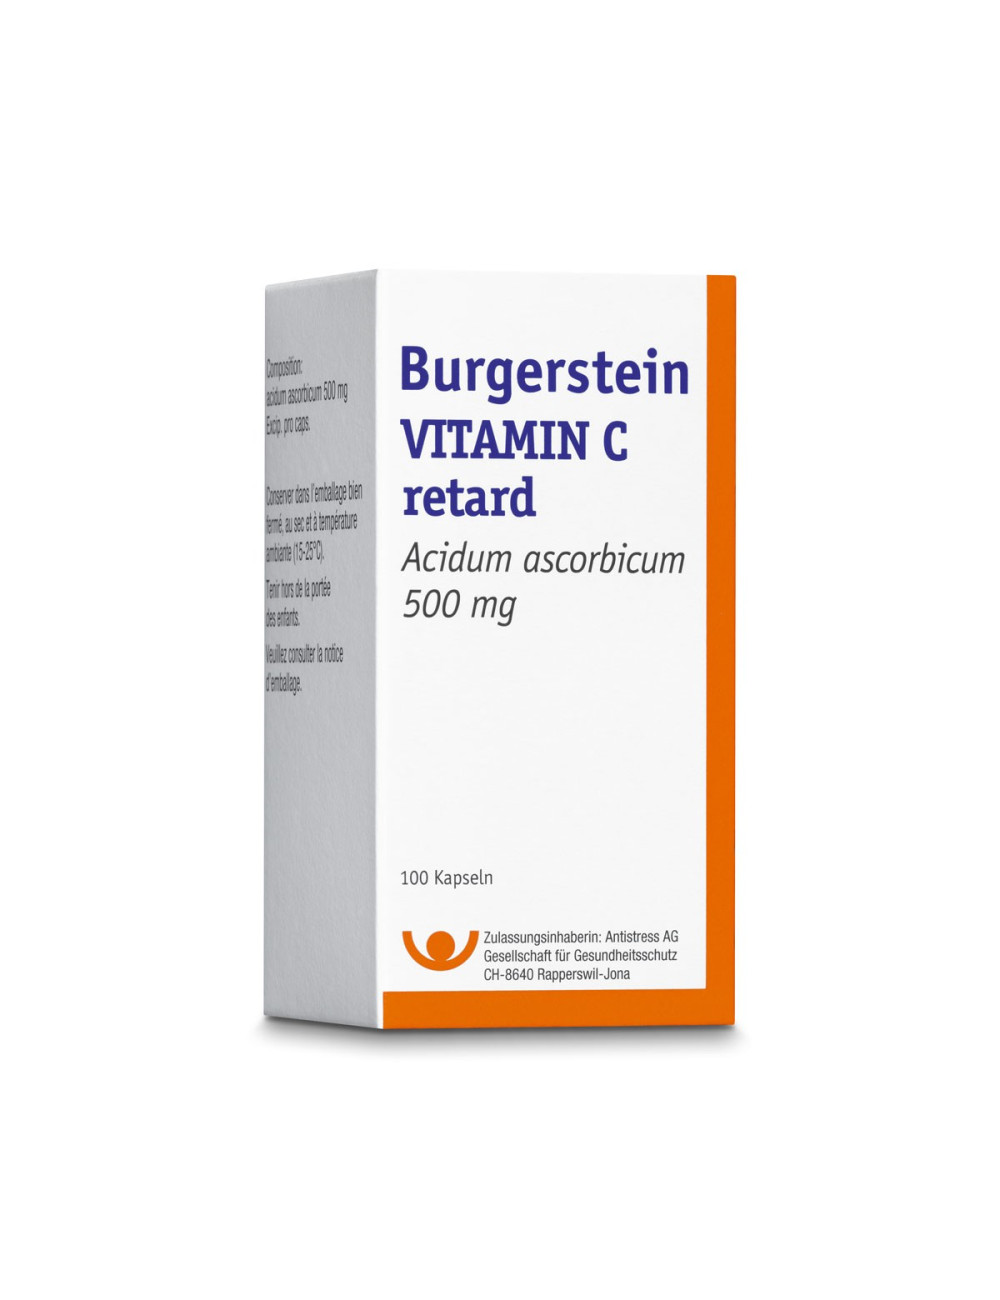 Burgerstein Vitamin C